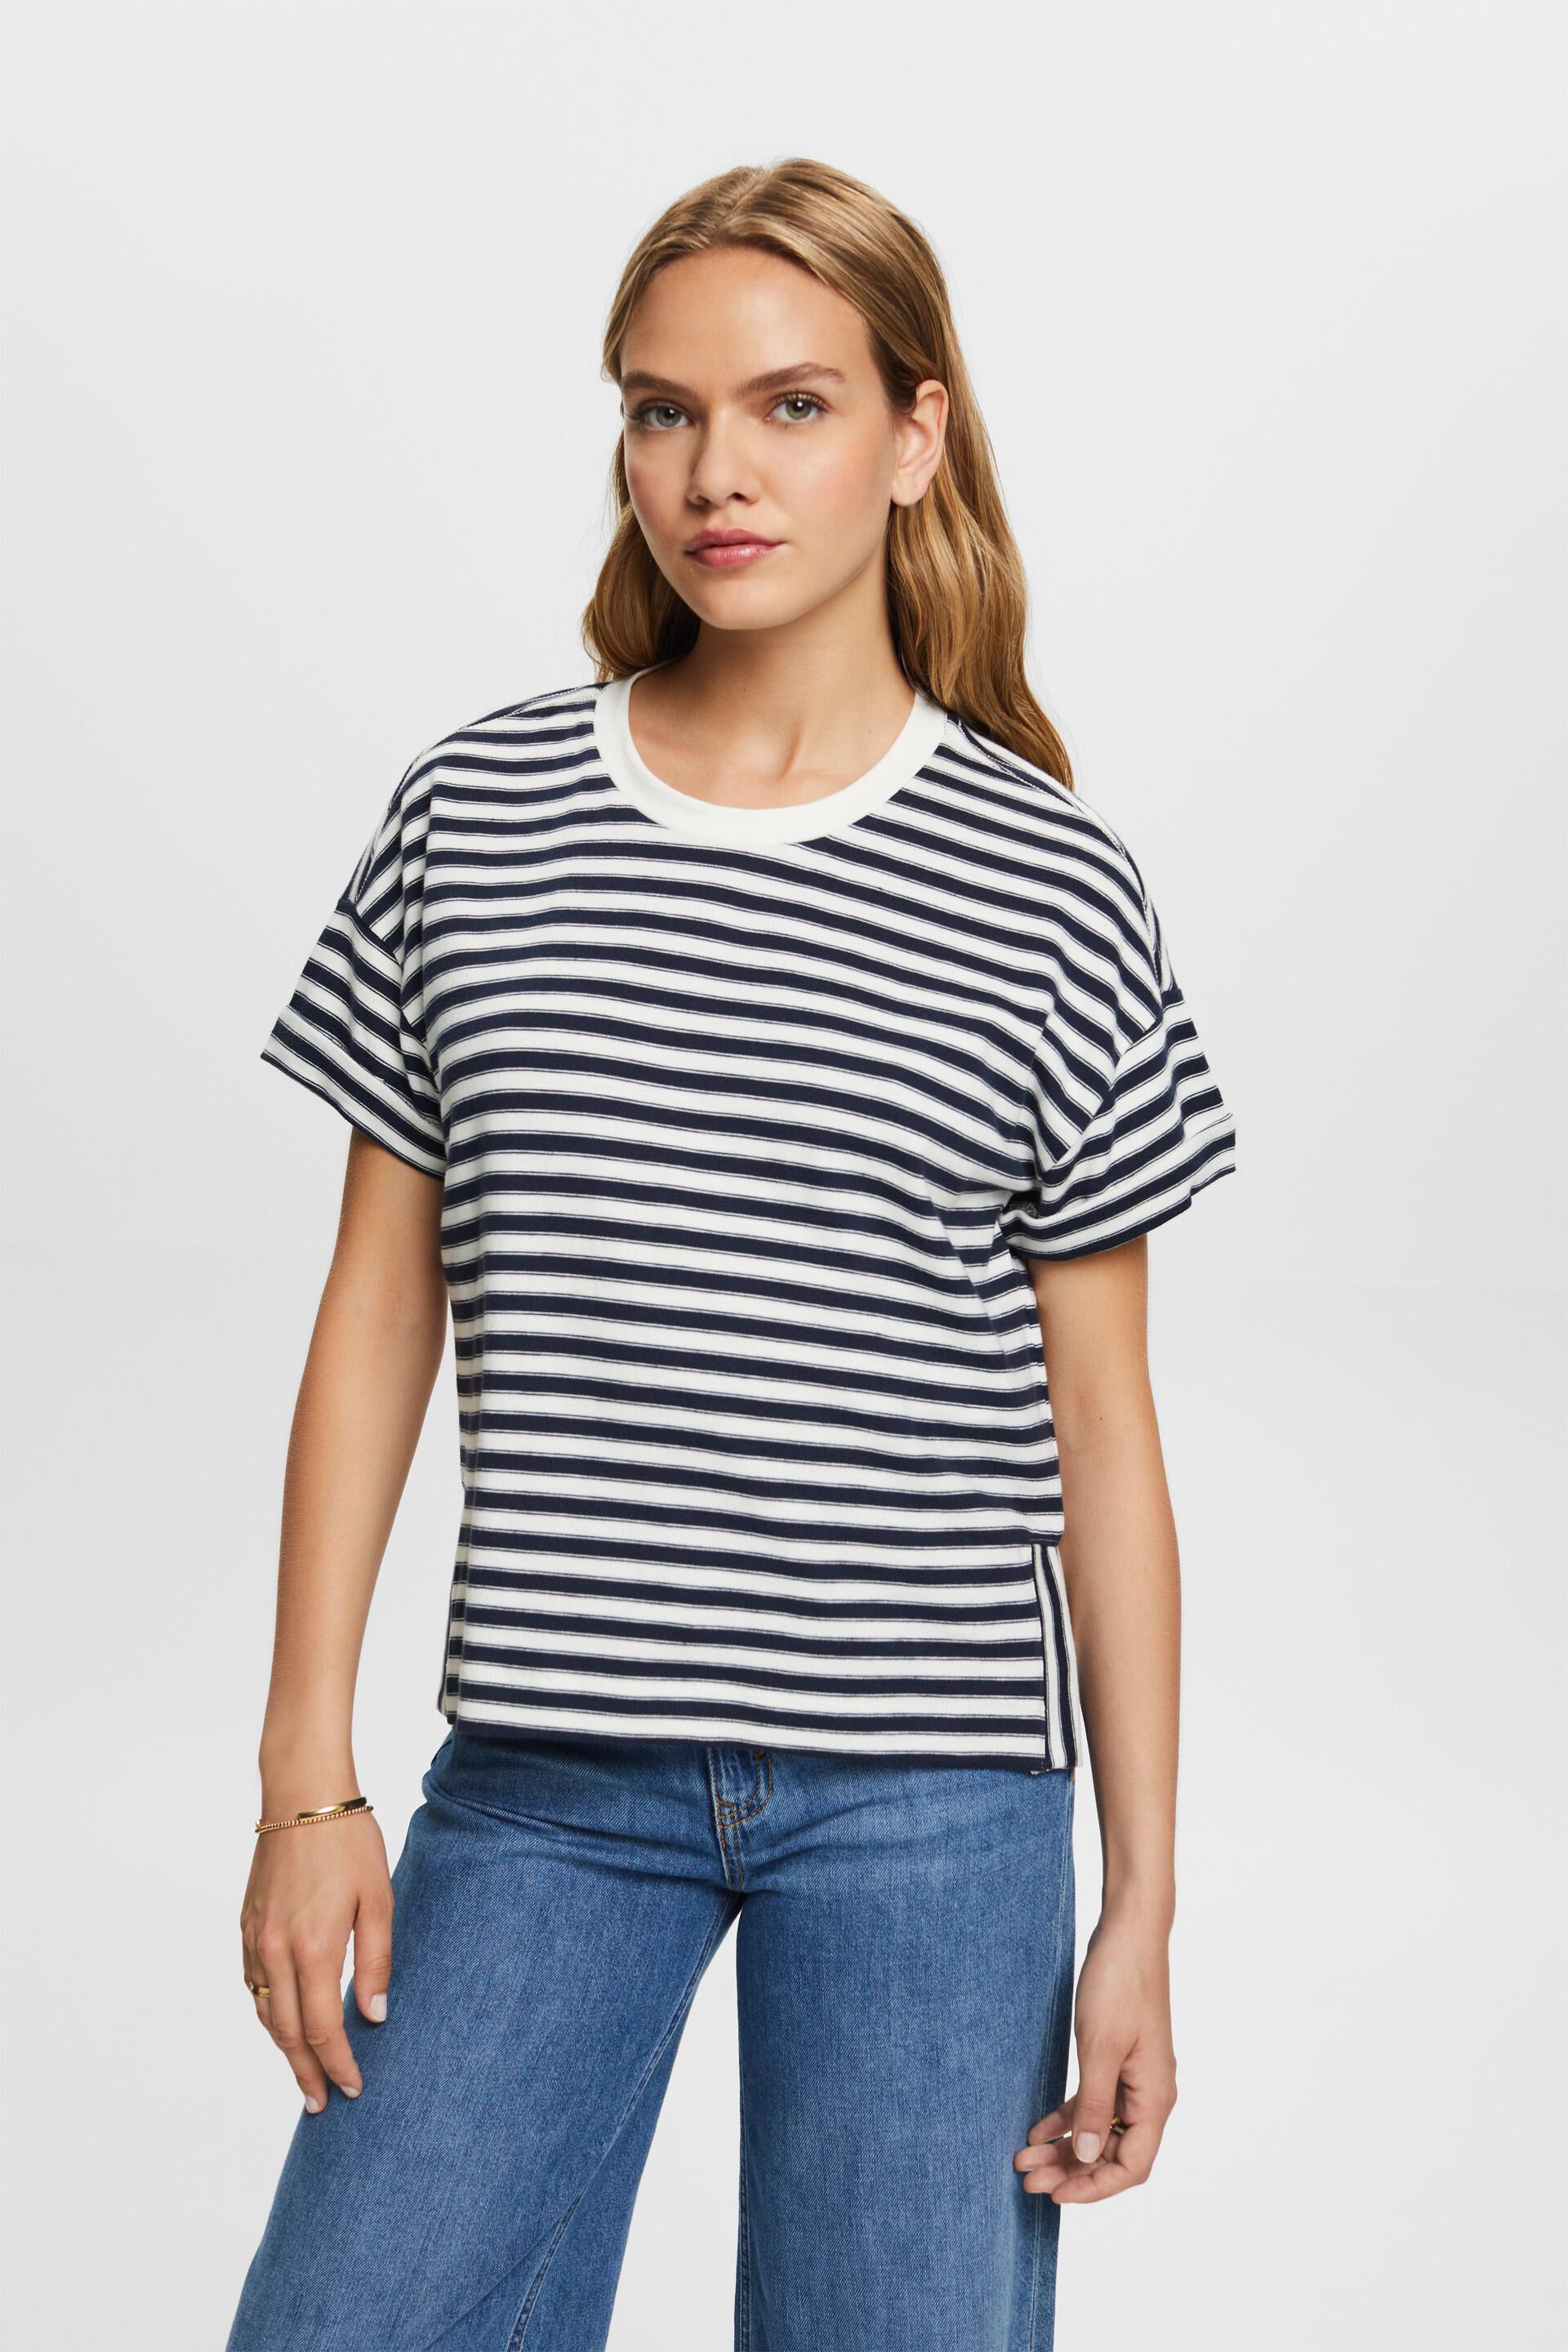 Esprit Striped t-shirt, cotton 100%